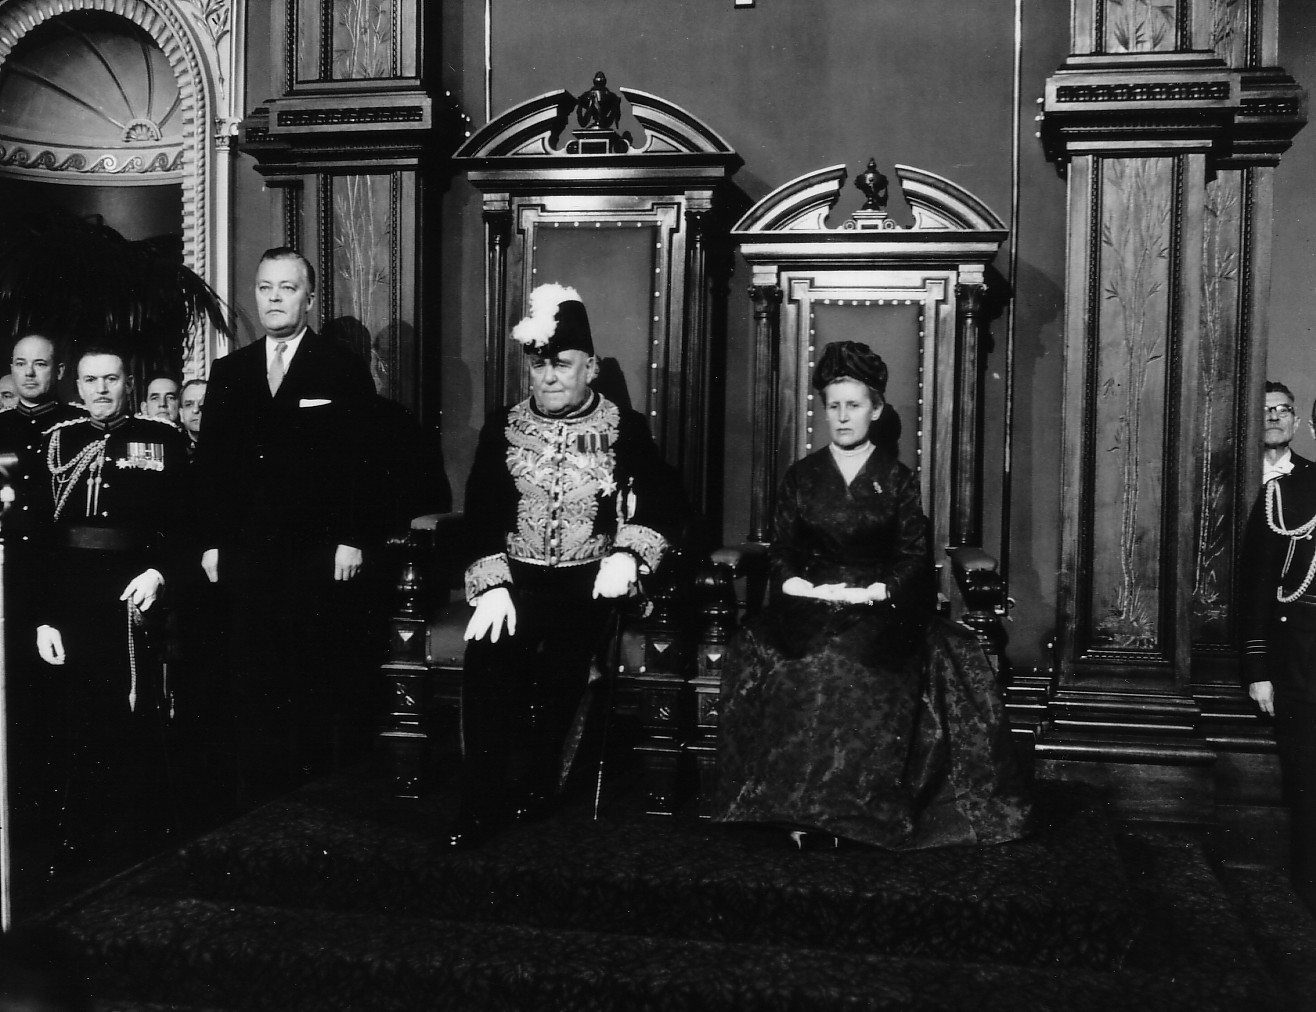 Le lieutenant gouverneur, M. O. Gagnon, Mme Gagnon ainsi que le premier ministre Jean Lesage, lors de l'ouverture de la session parlementaire au Parlement de Québec